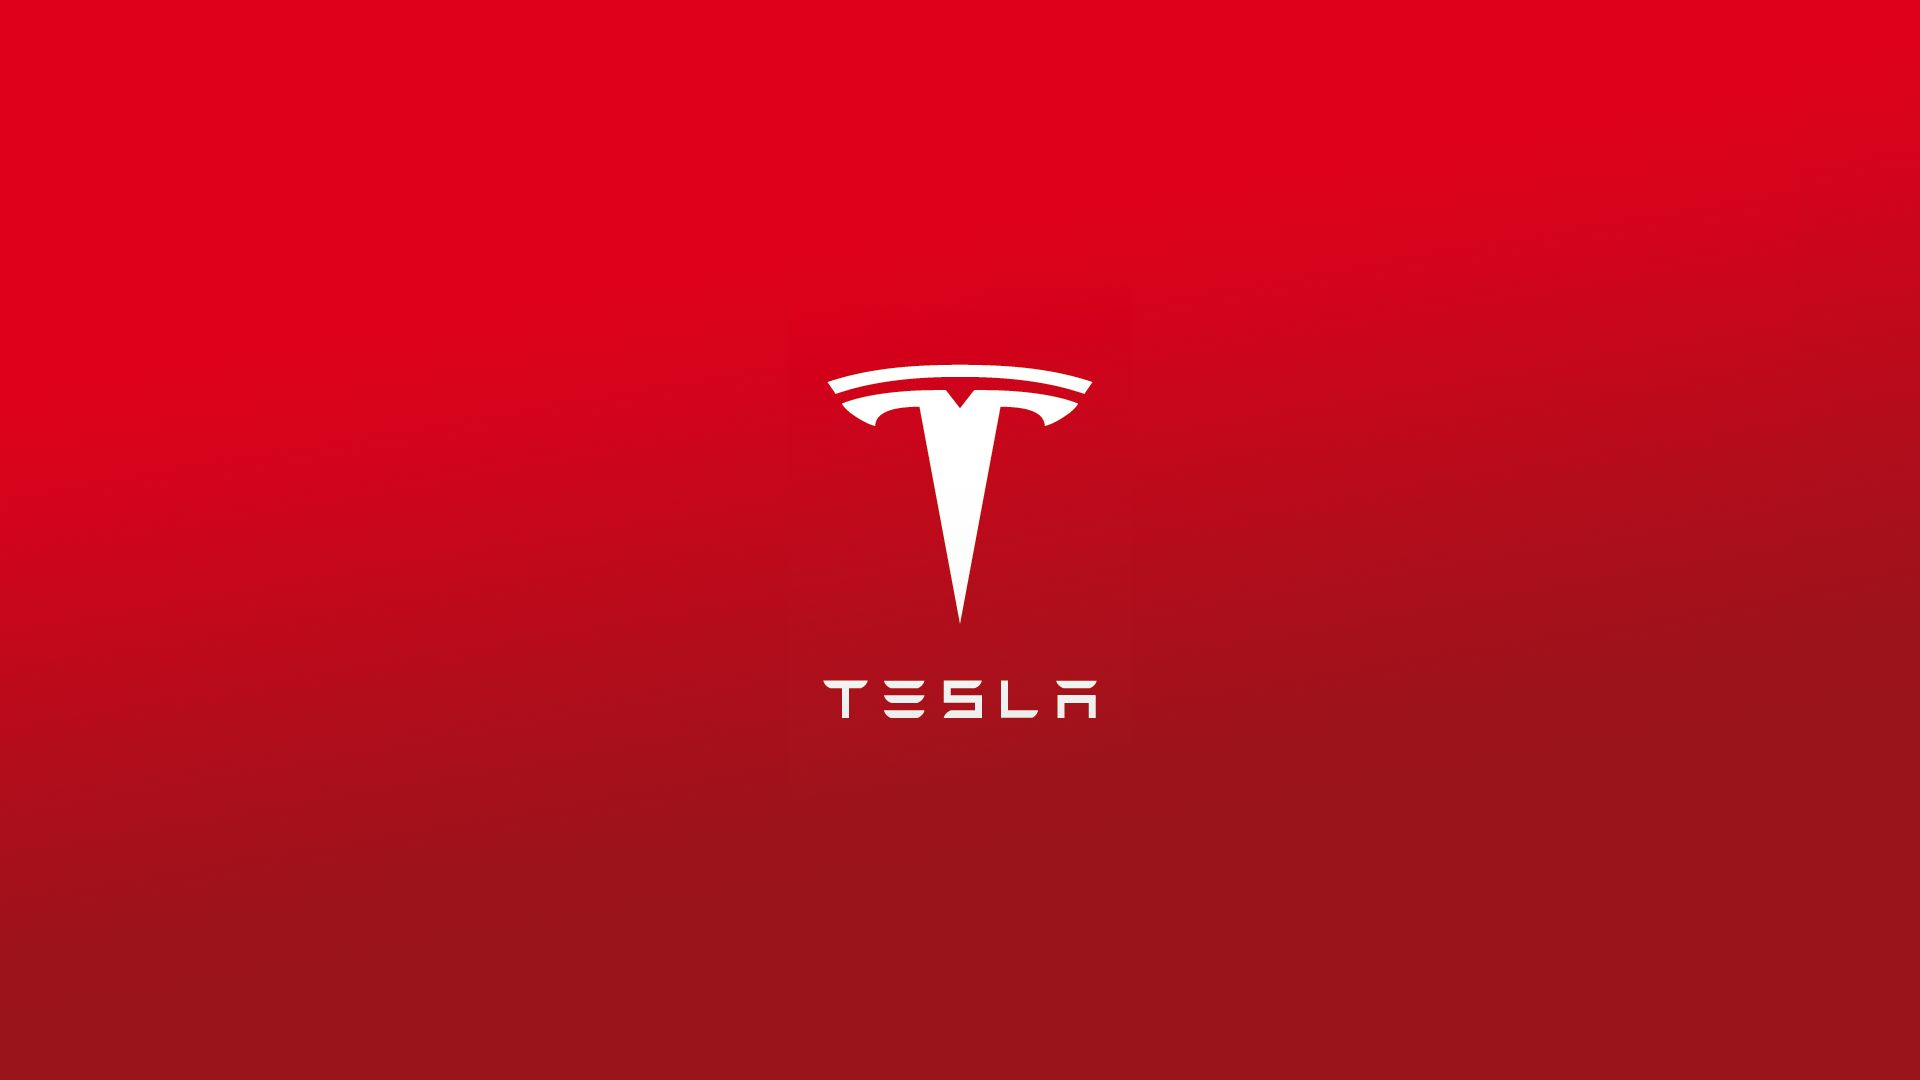 Descargar fondos de escritorio de Motores Tesla HD